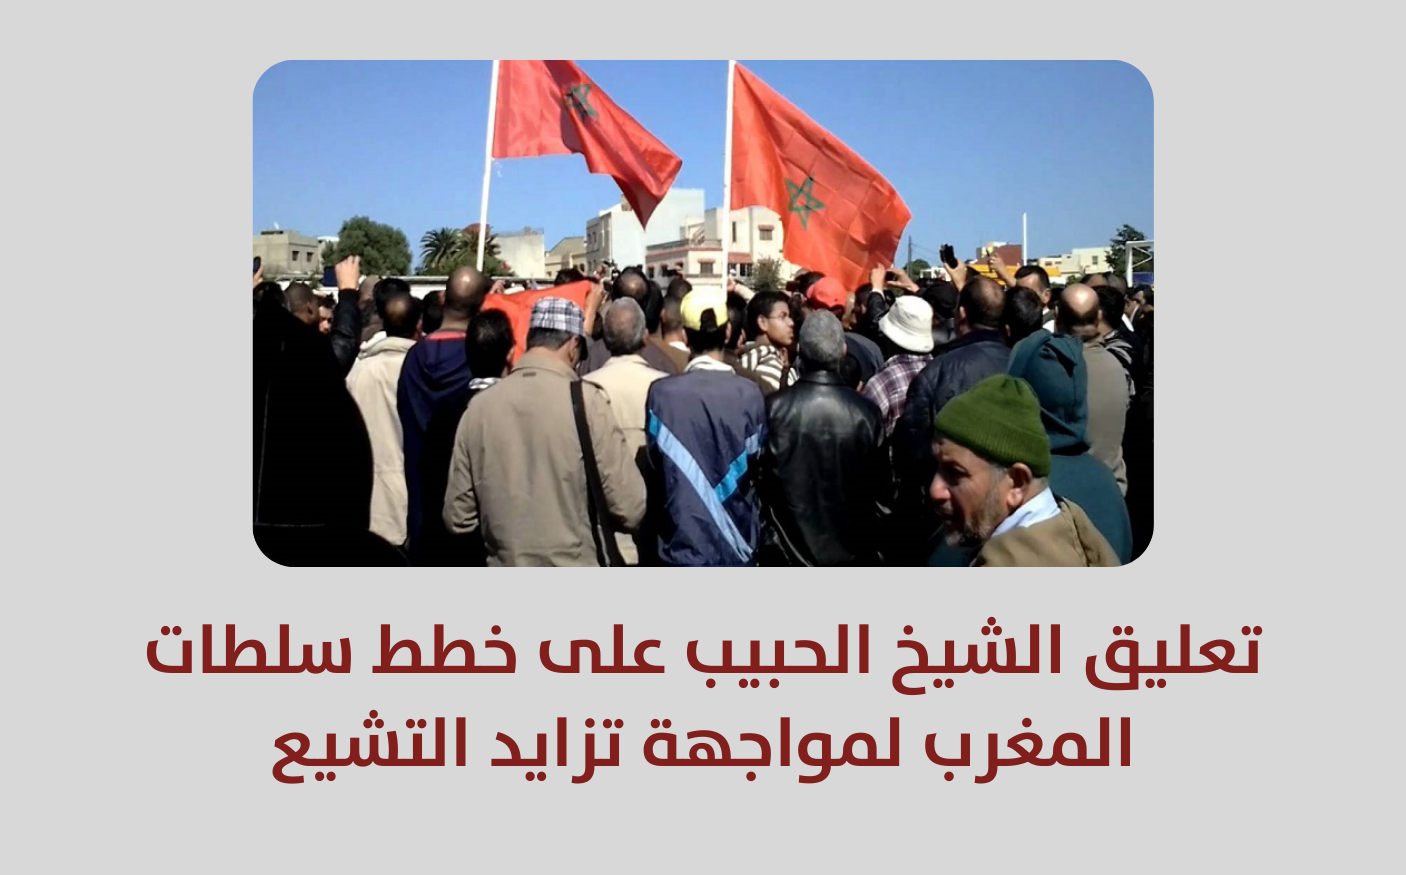 تصريح | تعليق الشيخ على خطط سلطات المغرب لمواجهة تزايد التشيع